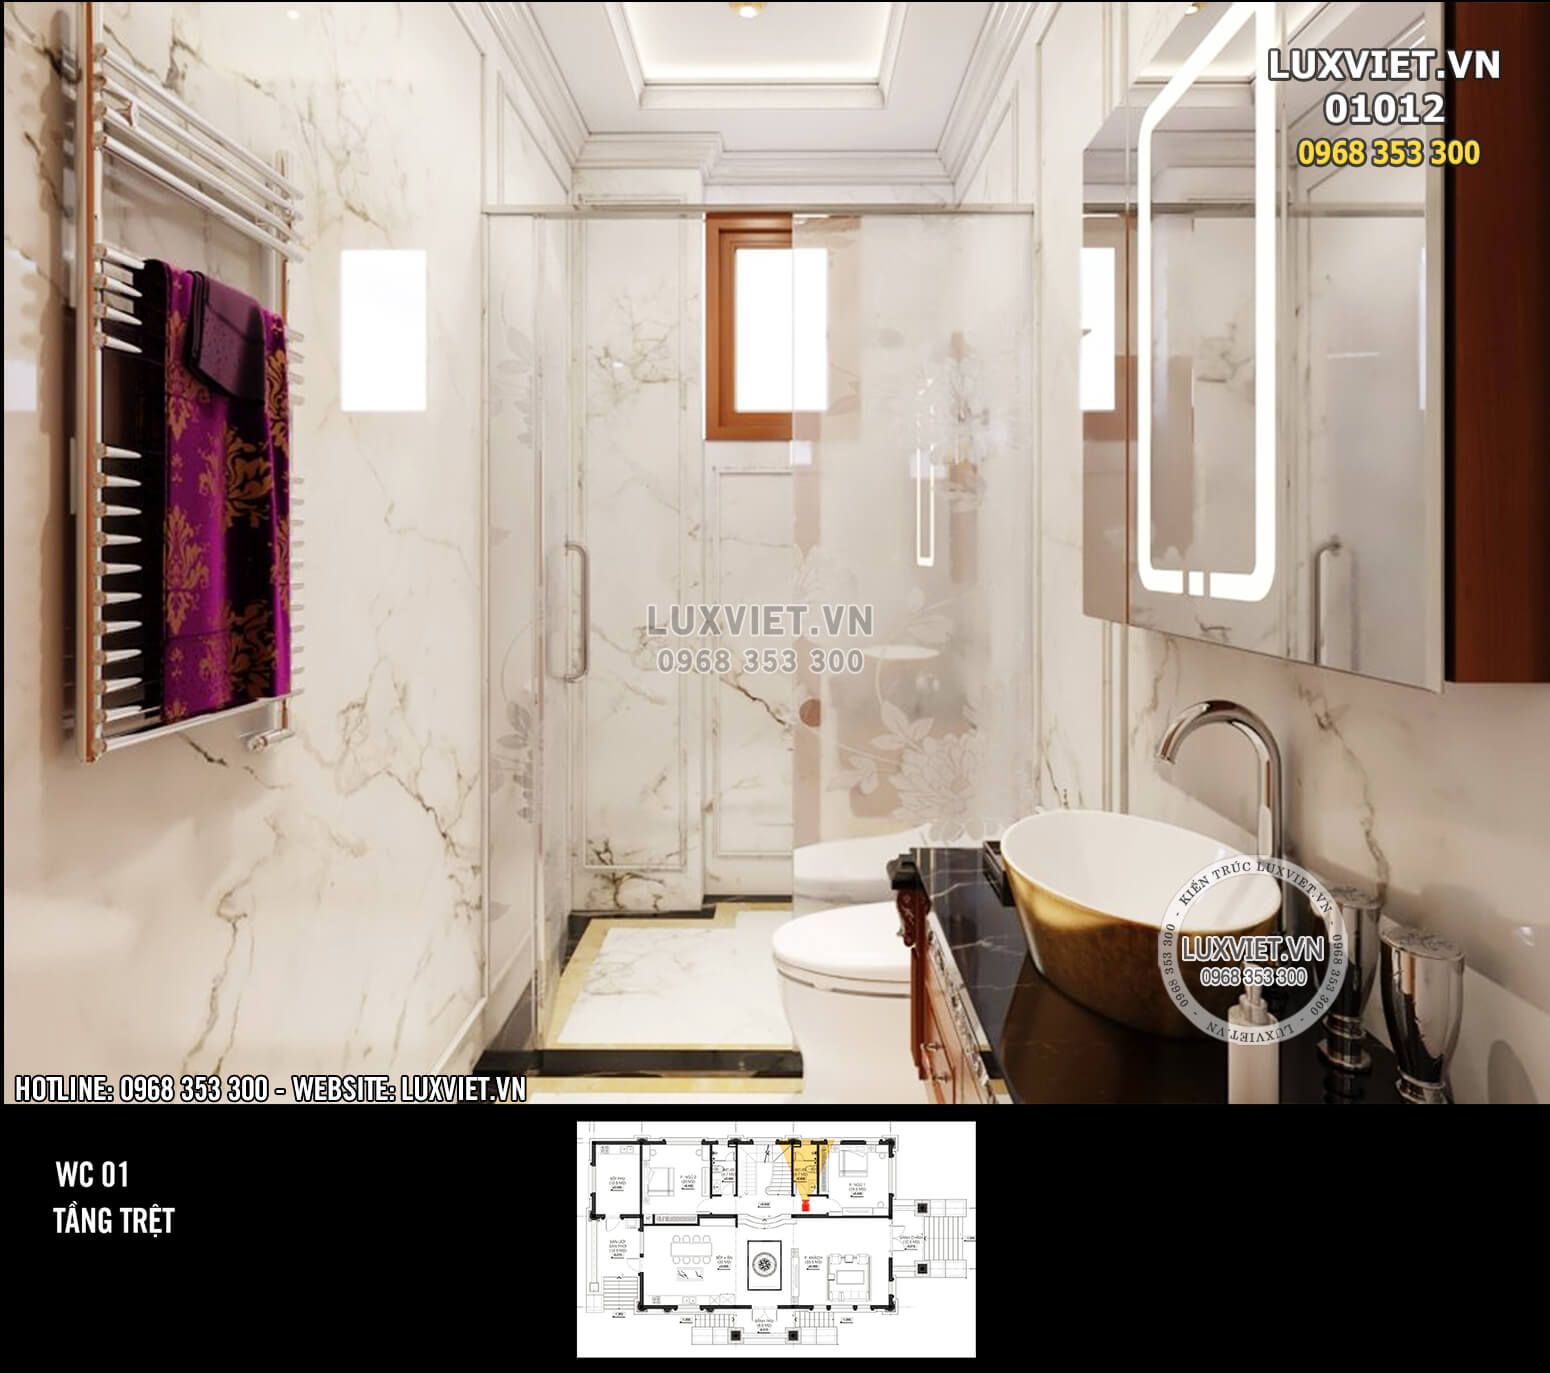 Hình ảnh: Không gian phòng vệ sinh chung tại tầng trệt